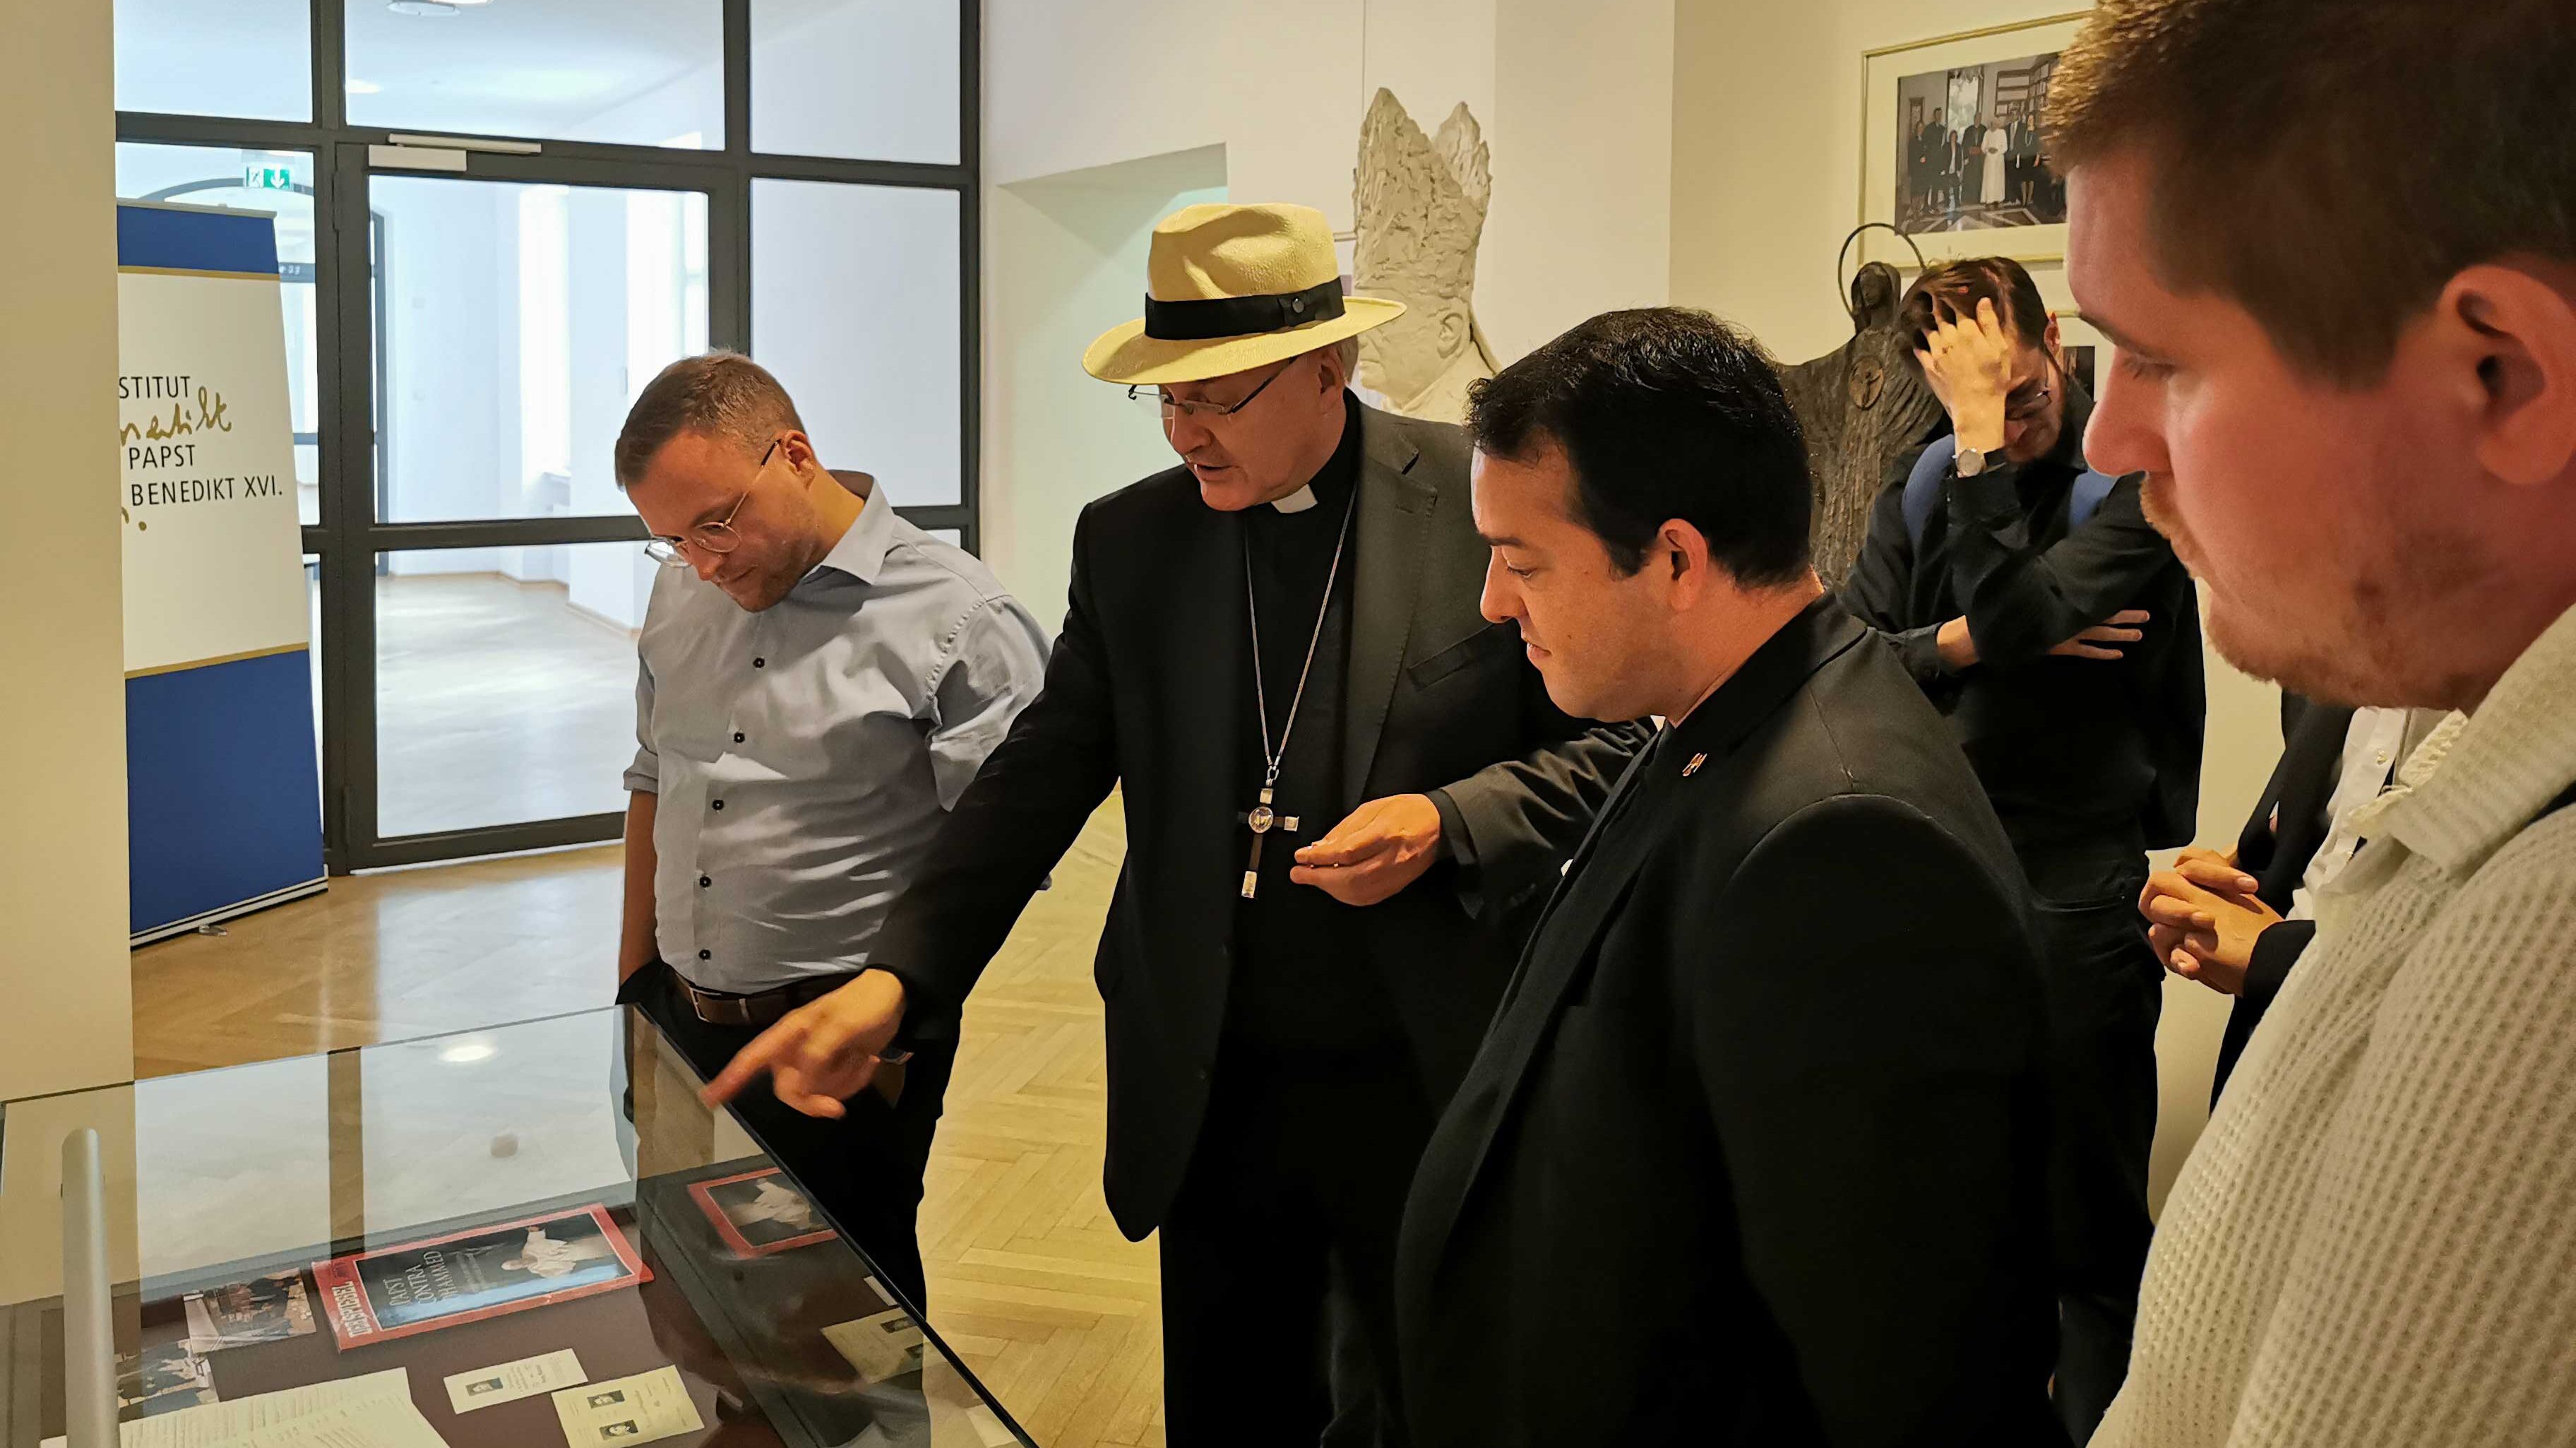 Bischof Rudolf zeigt Eichstätter Seminaristen das Institut Papst Benedikt XVI.